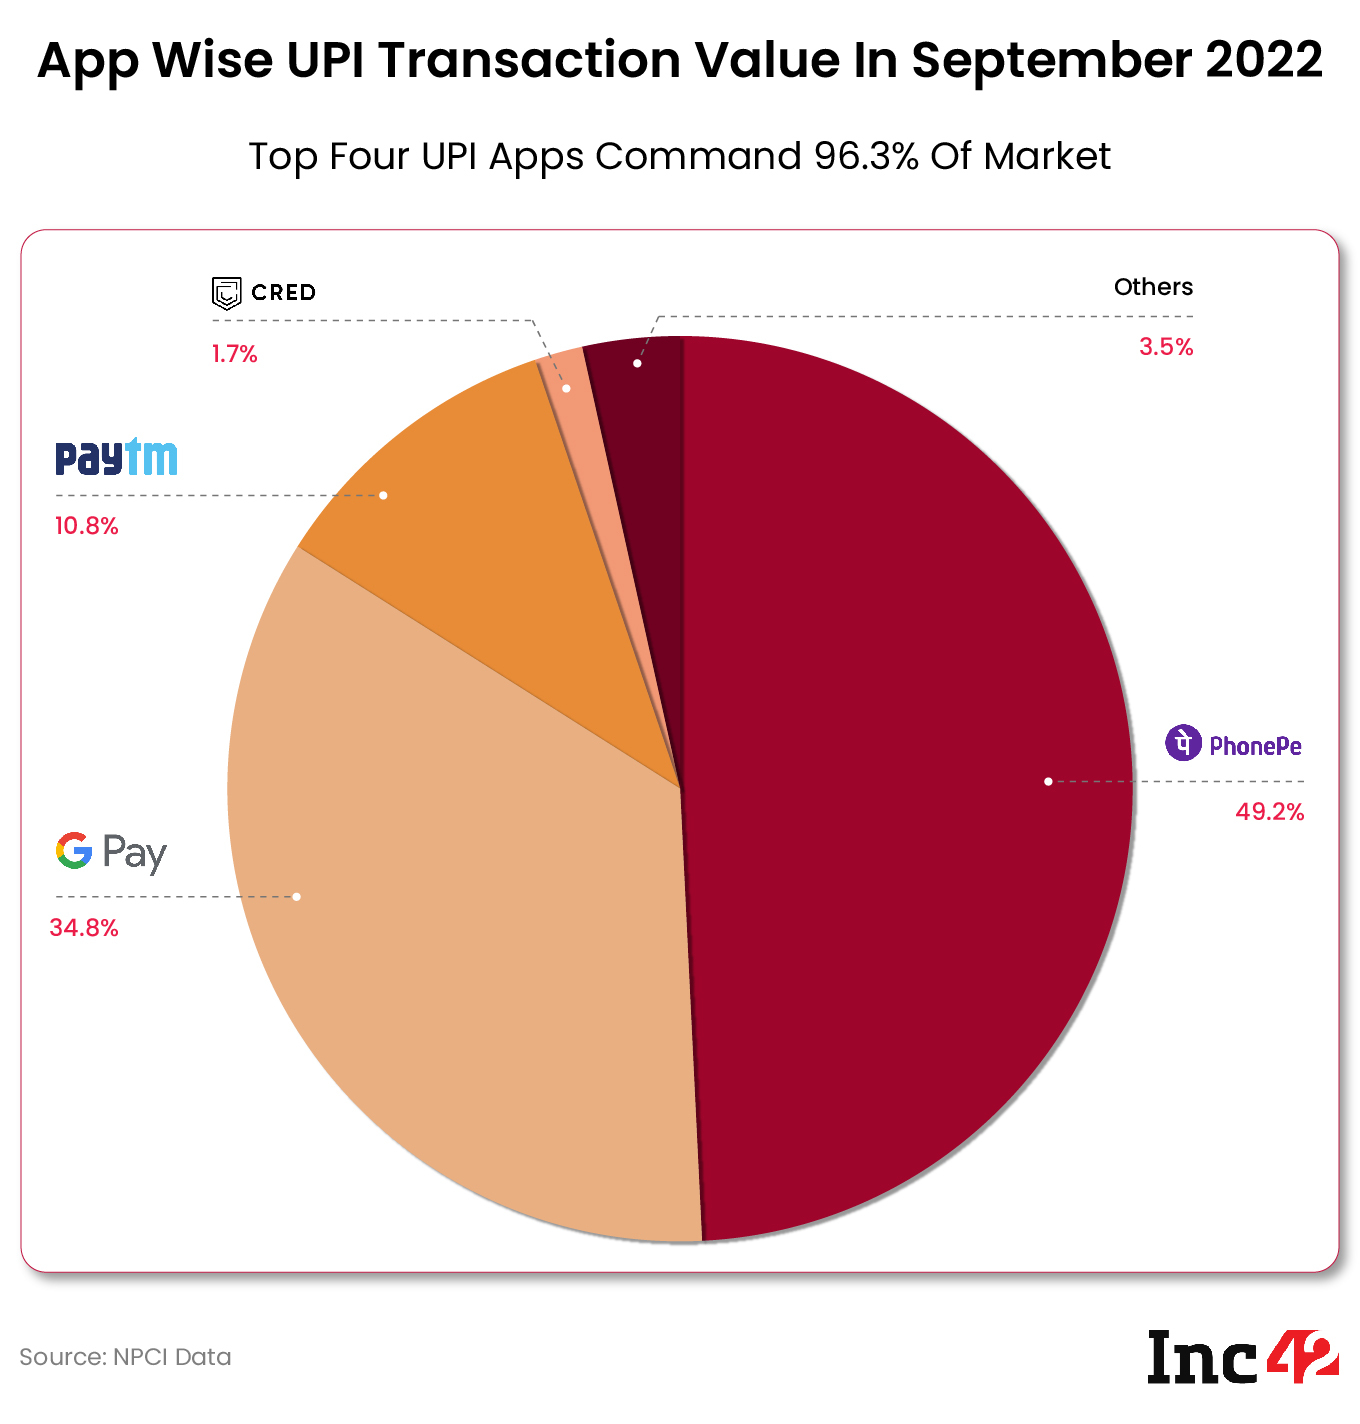 App wise UPI transaction value in September 2022